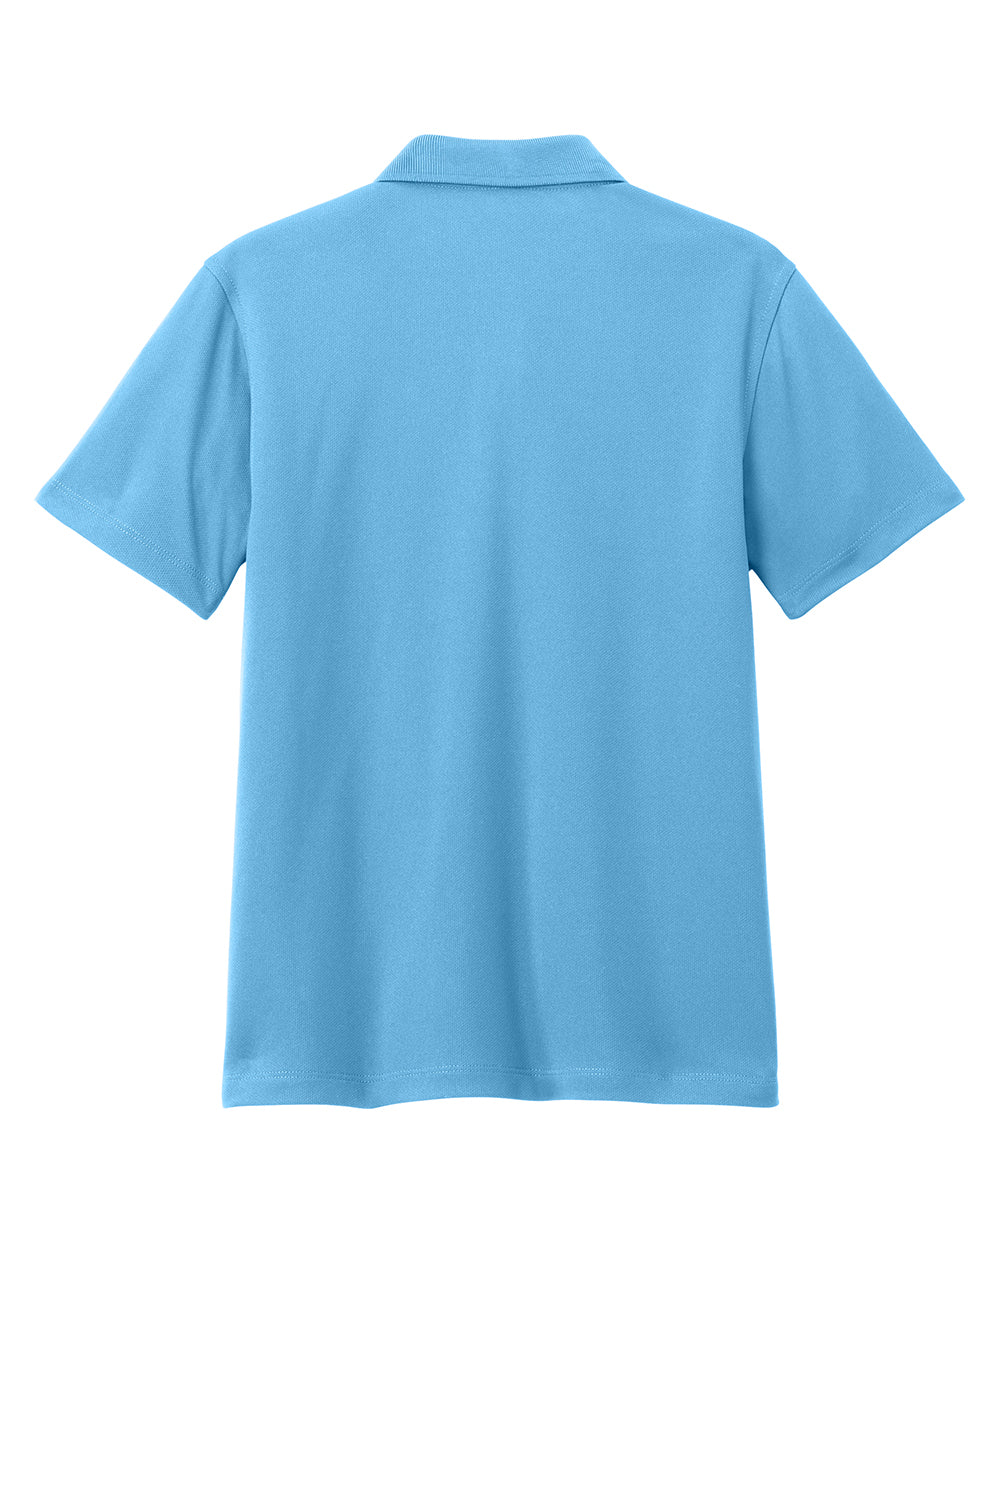 Port Authority Y110 Youth Dry Zone Moisture Wicking Short Sleeve Polo Shirt Carolina Blue Flat Back